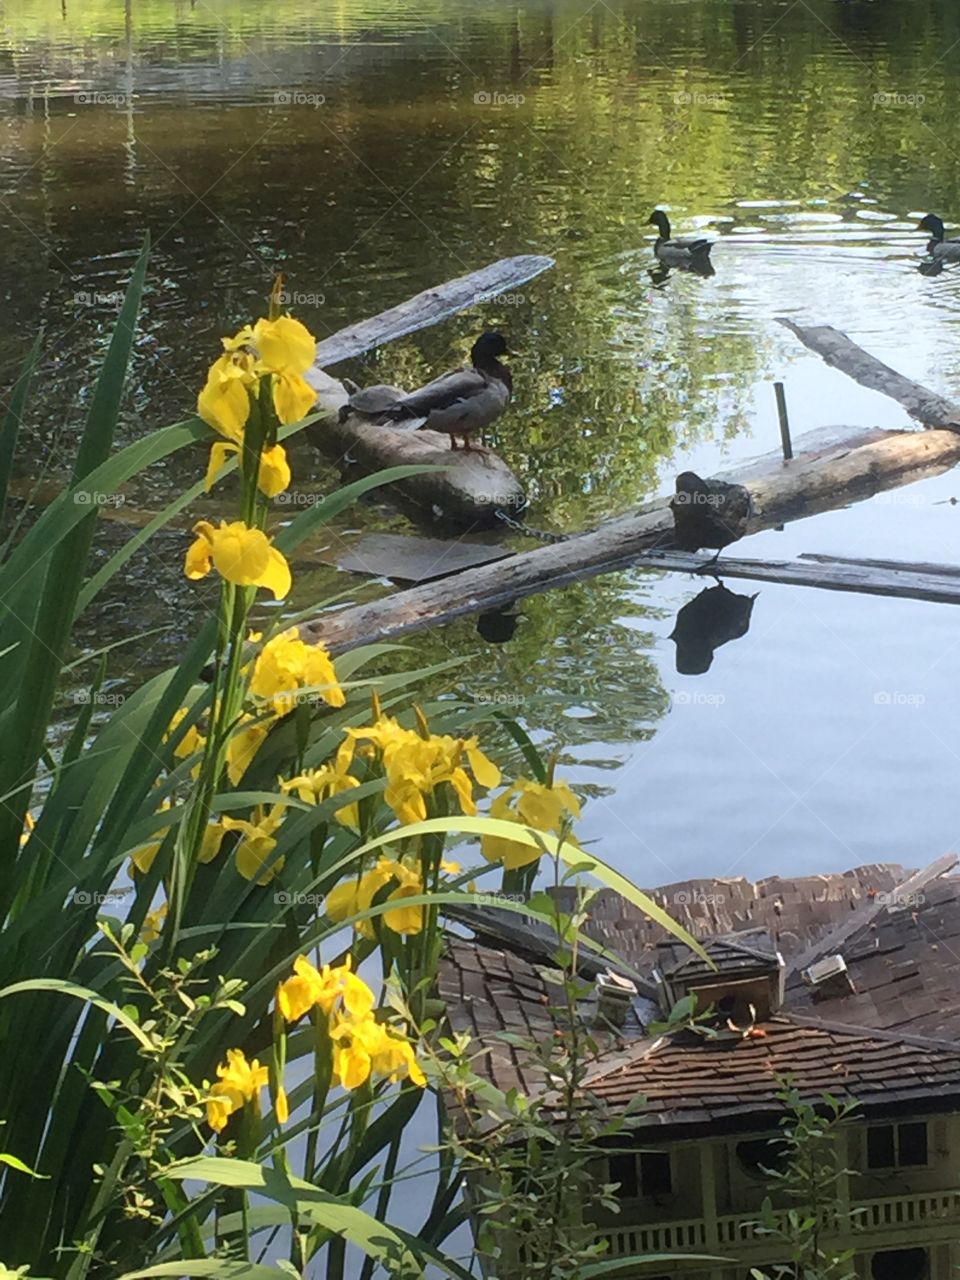 Turtles on pond